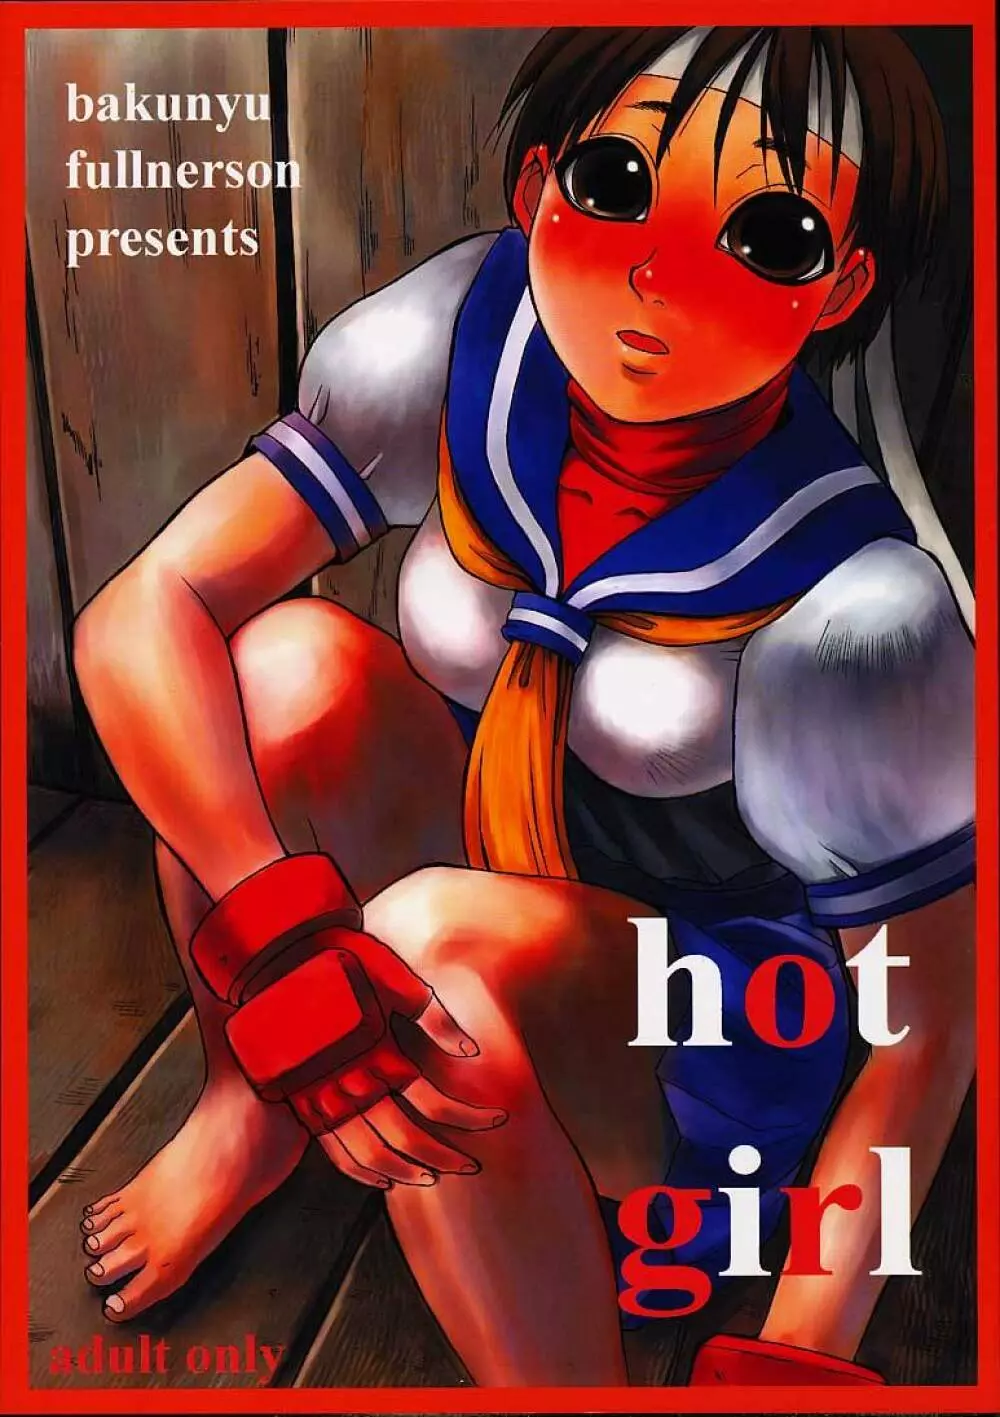 Hot Girl